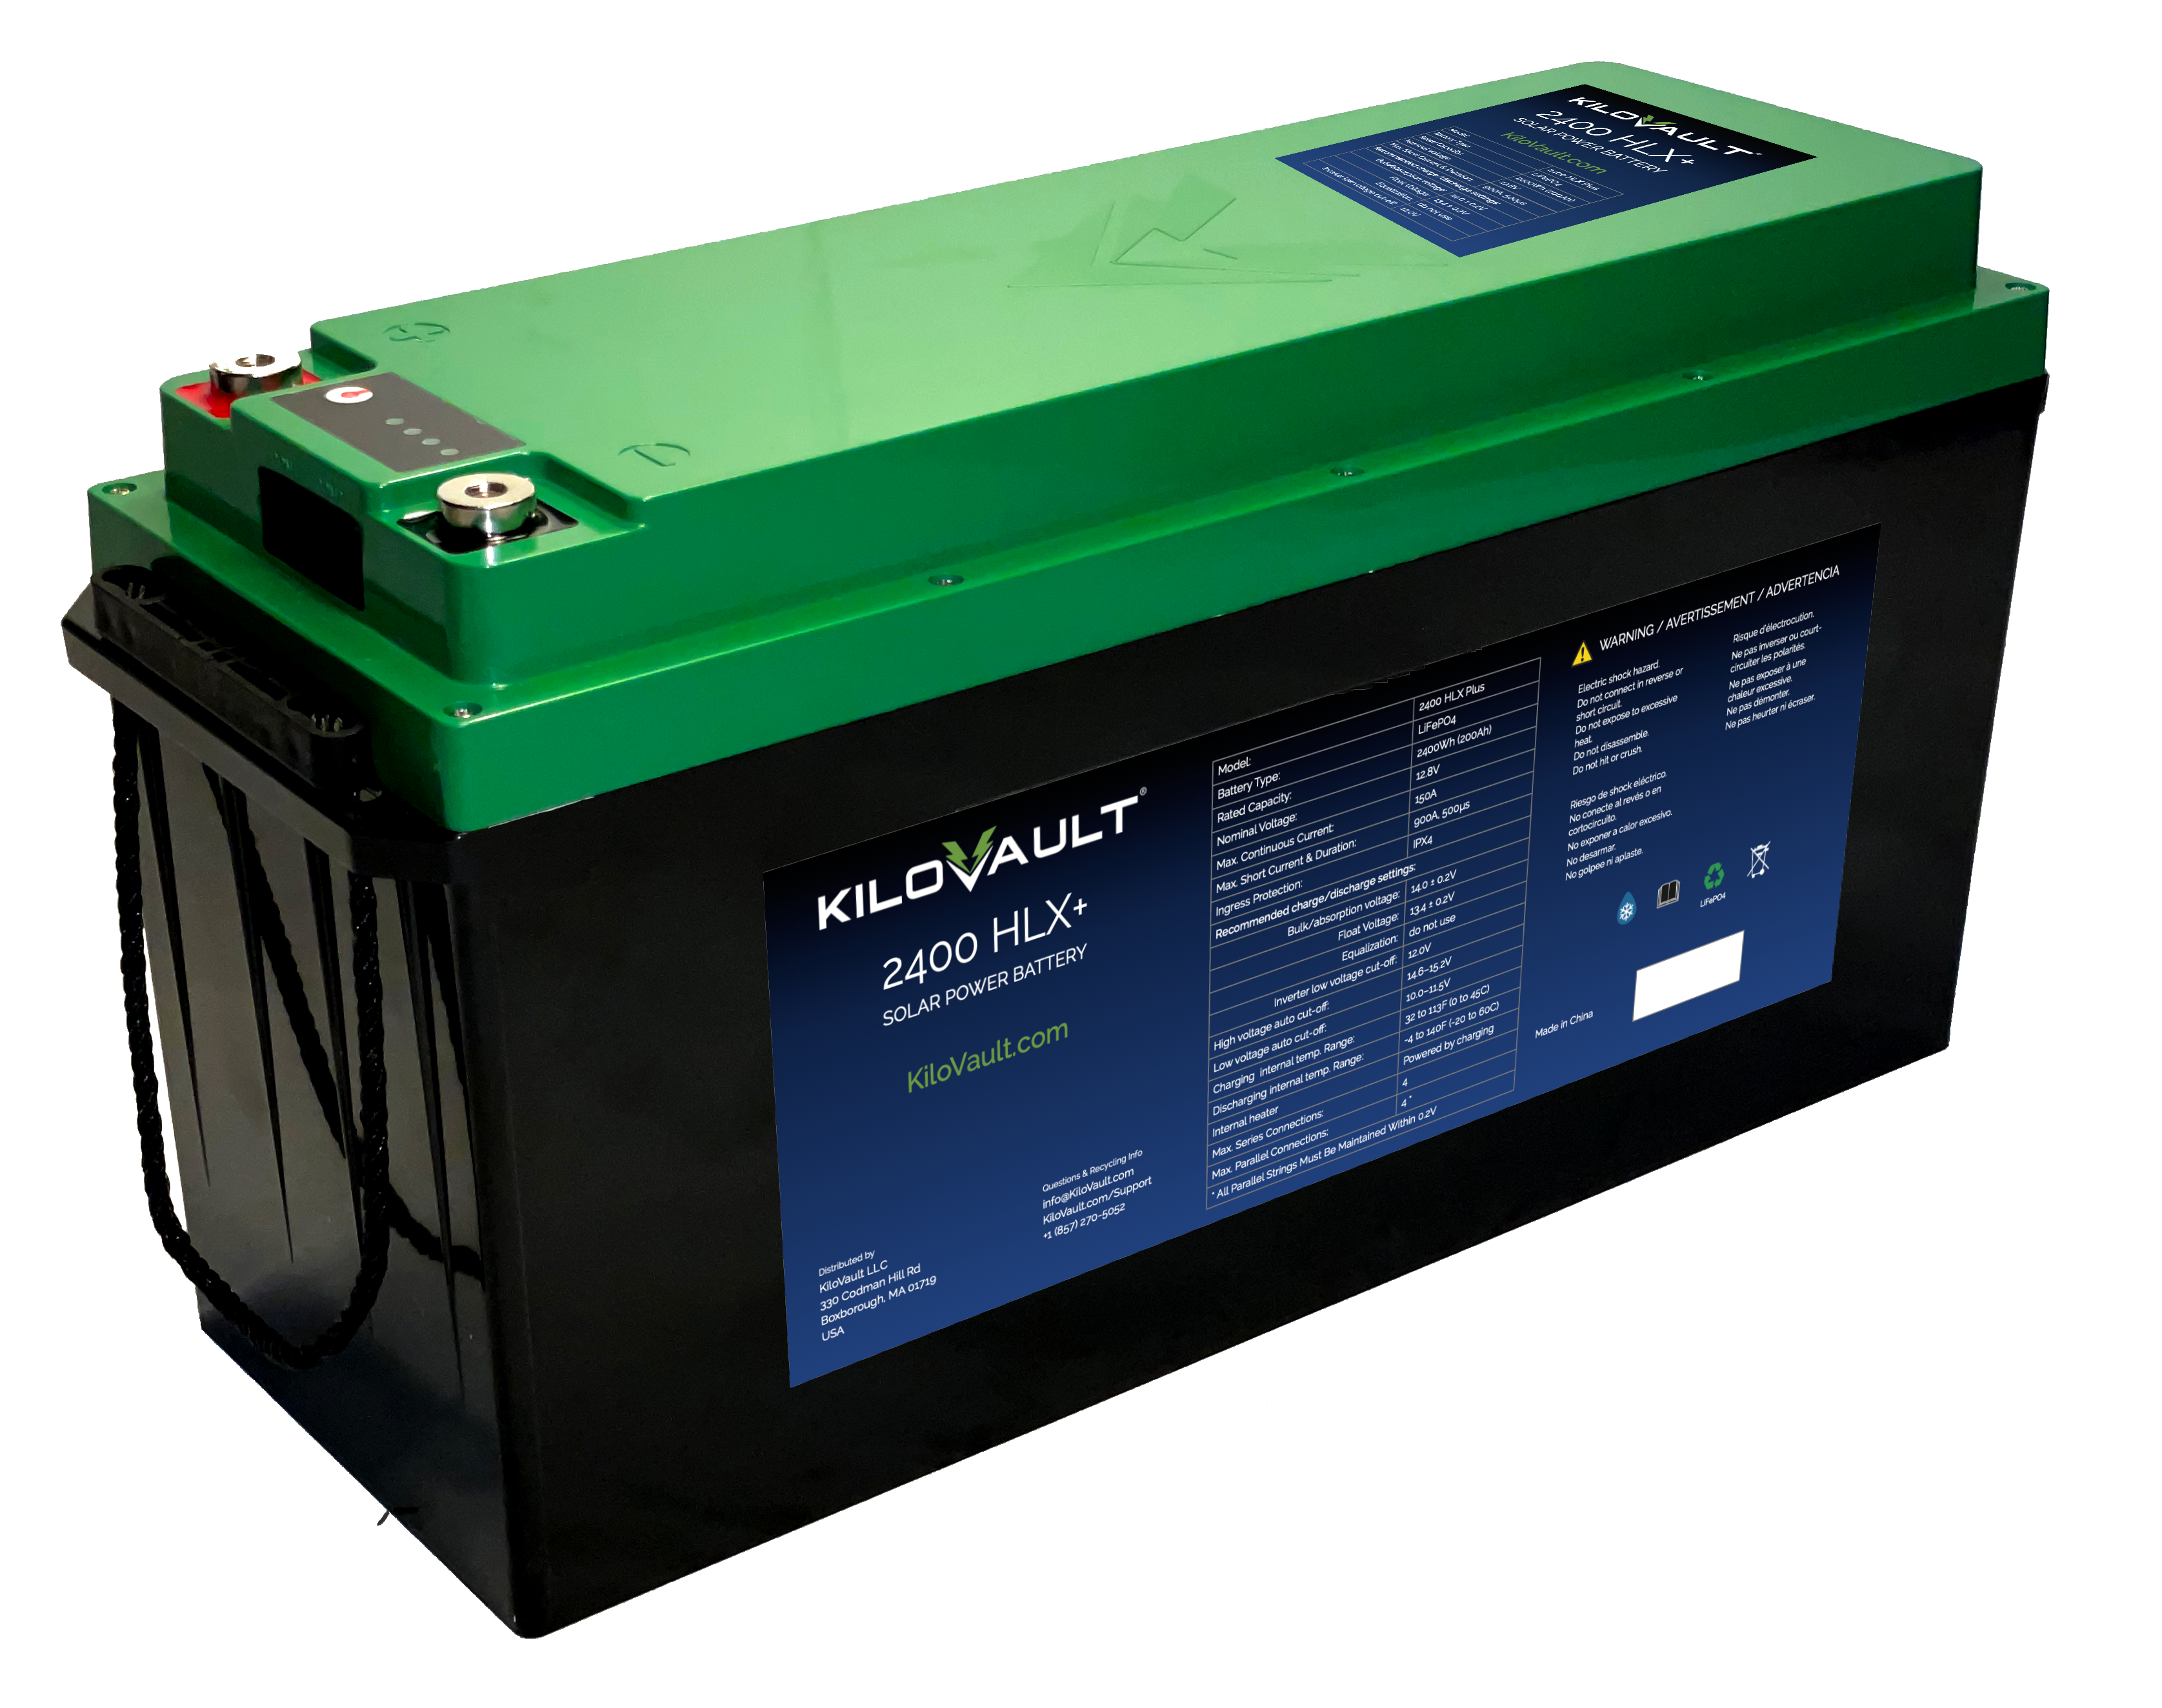 Best Battery Monitors for RVs & 12V - 48V Solar Batteries 